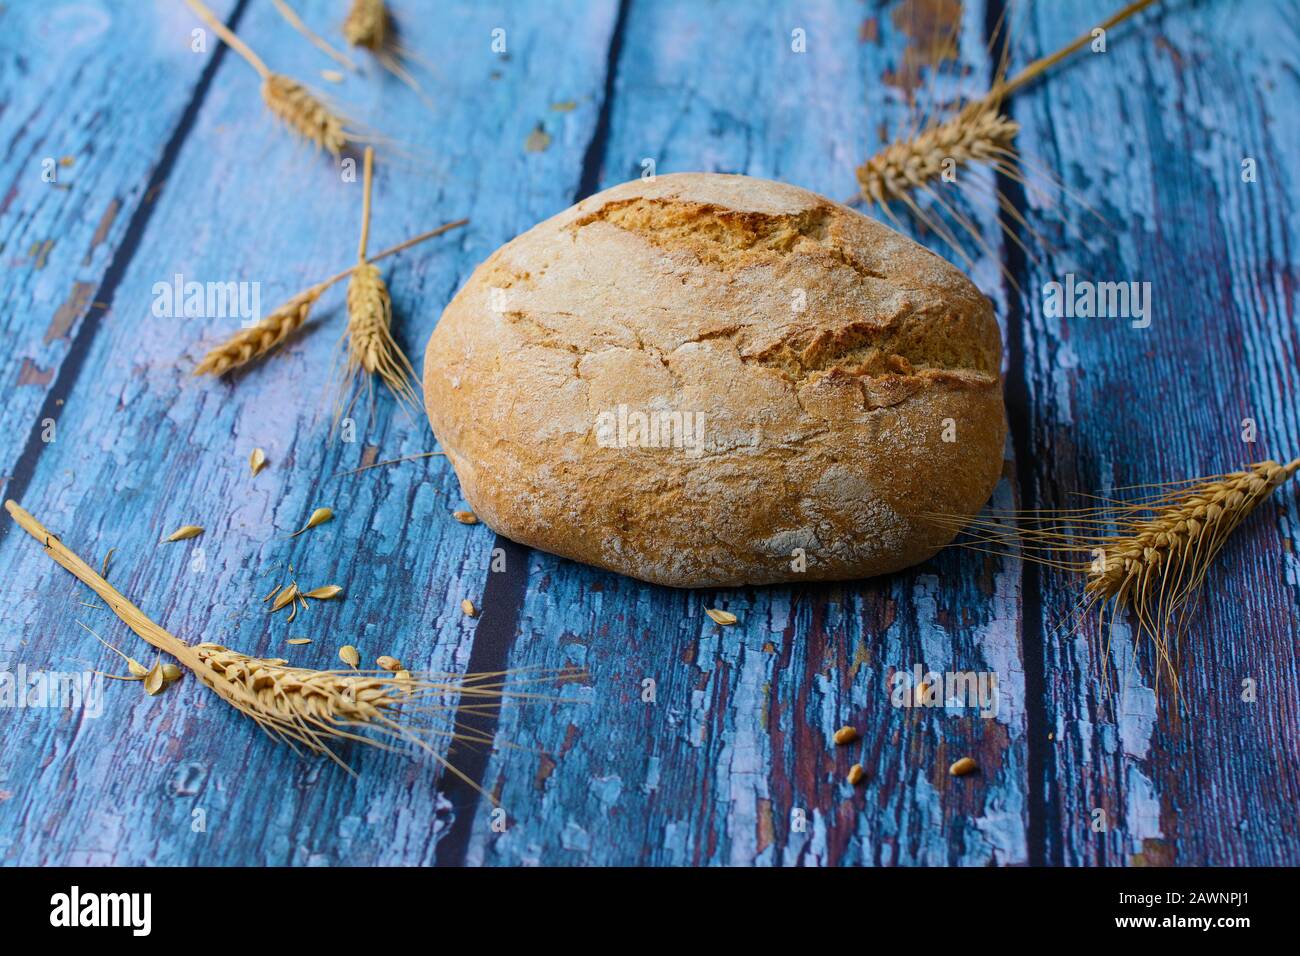 Pane rotondo preparato con farina di grano e di segale su fondo rustico blu. Le spighe di grano, con le guglie, le uova ed i grani, sono sparse intorno al pane. Foto Stock